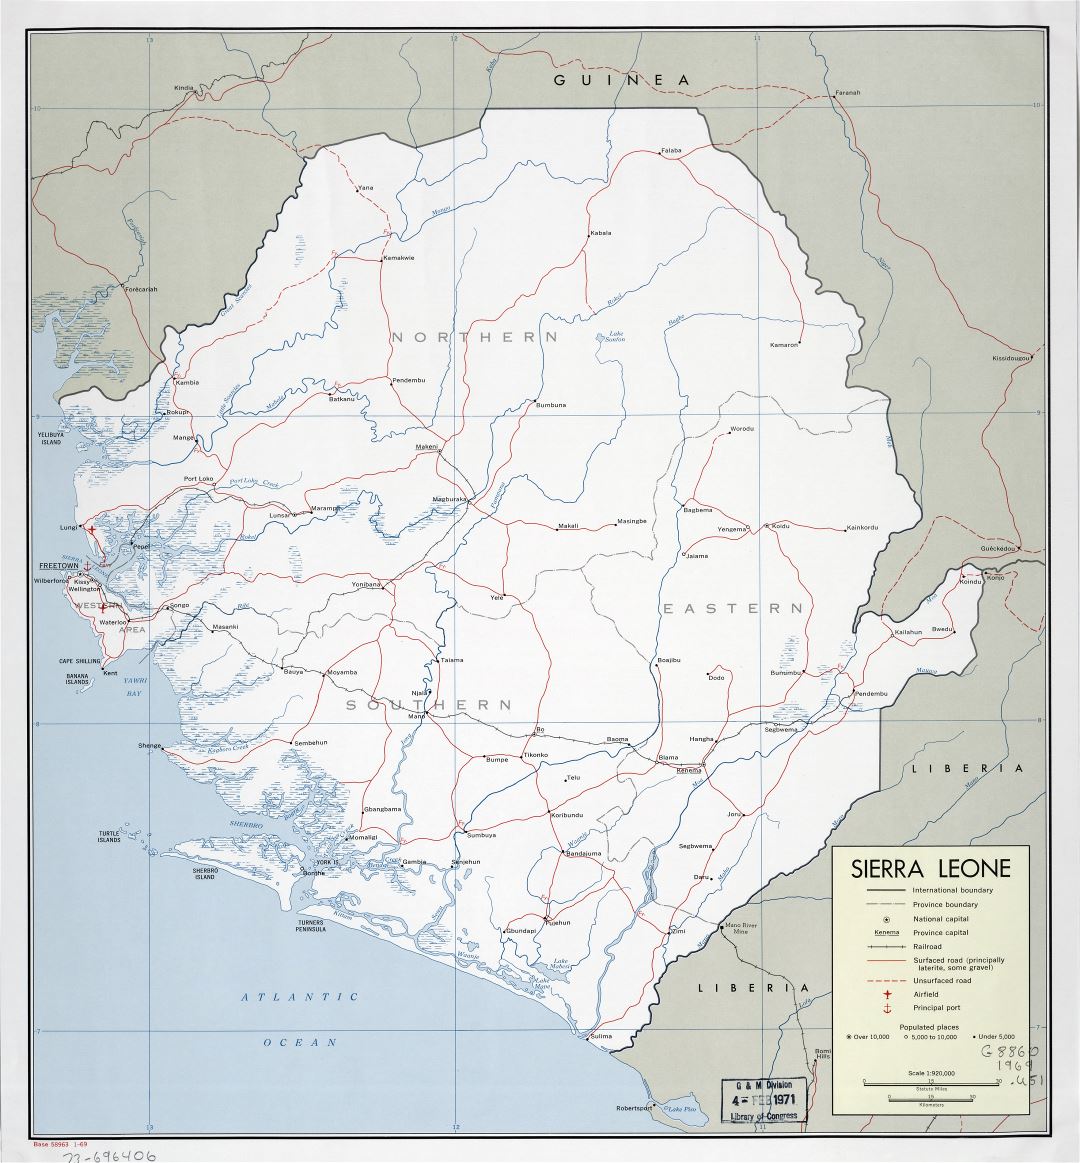 Большая детальная политическая и административная карта Сьерра-Леоне с дорогами, железными дорогами, городами, портами и аэропортами - 1969